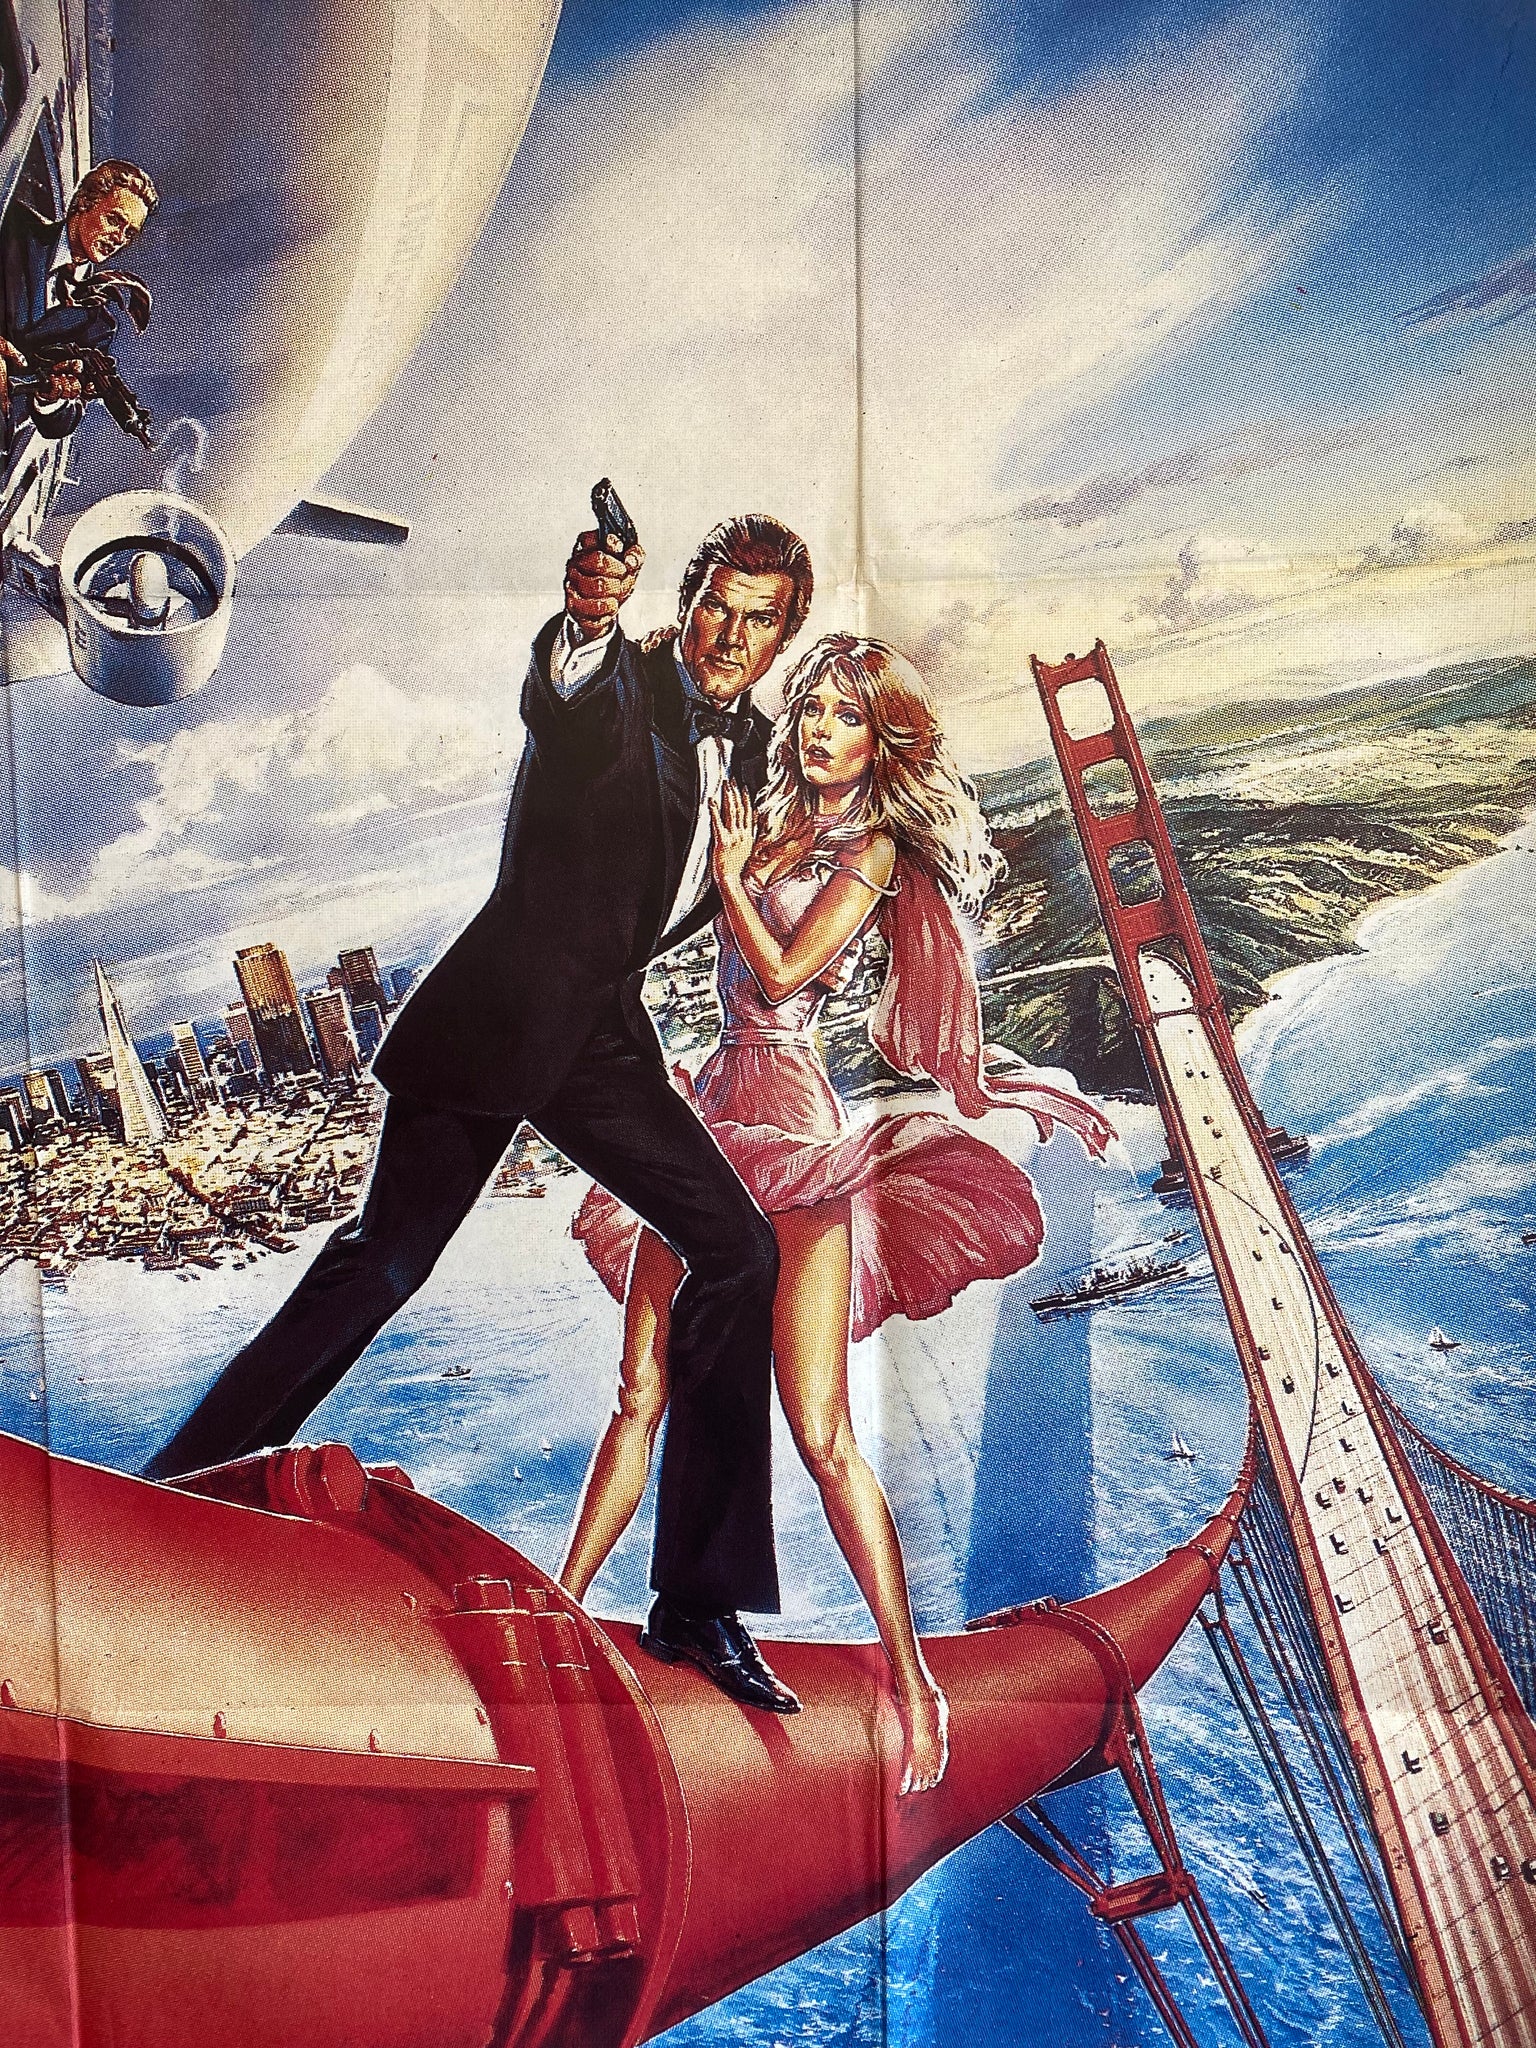 Affiche Cinéma originale James Bond  Dangereusement Vôtre de 1985. 